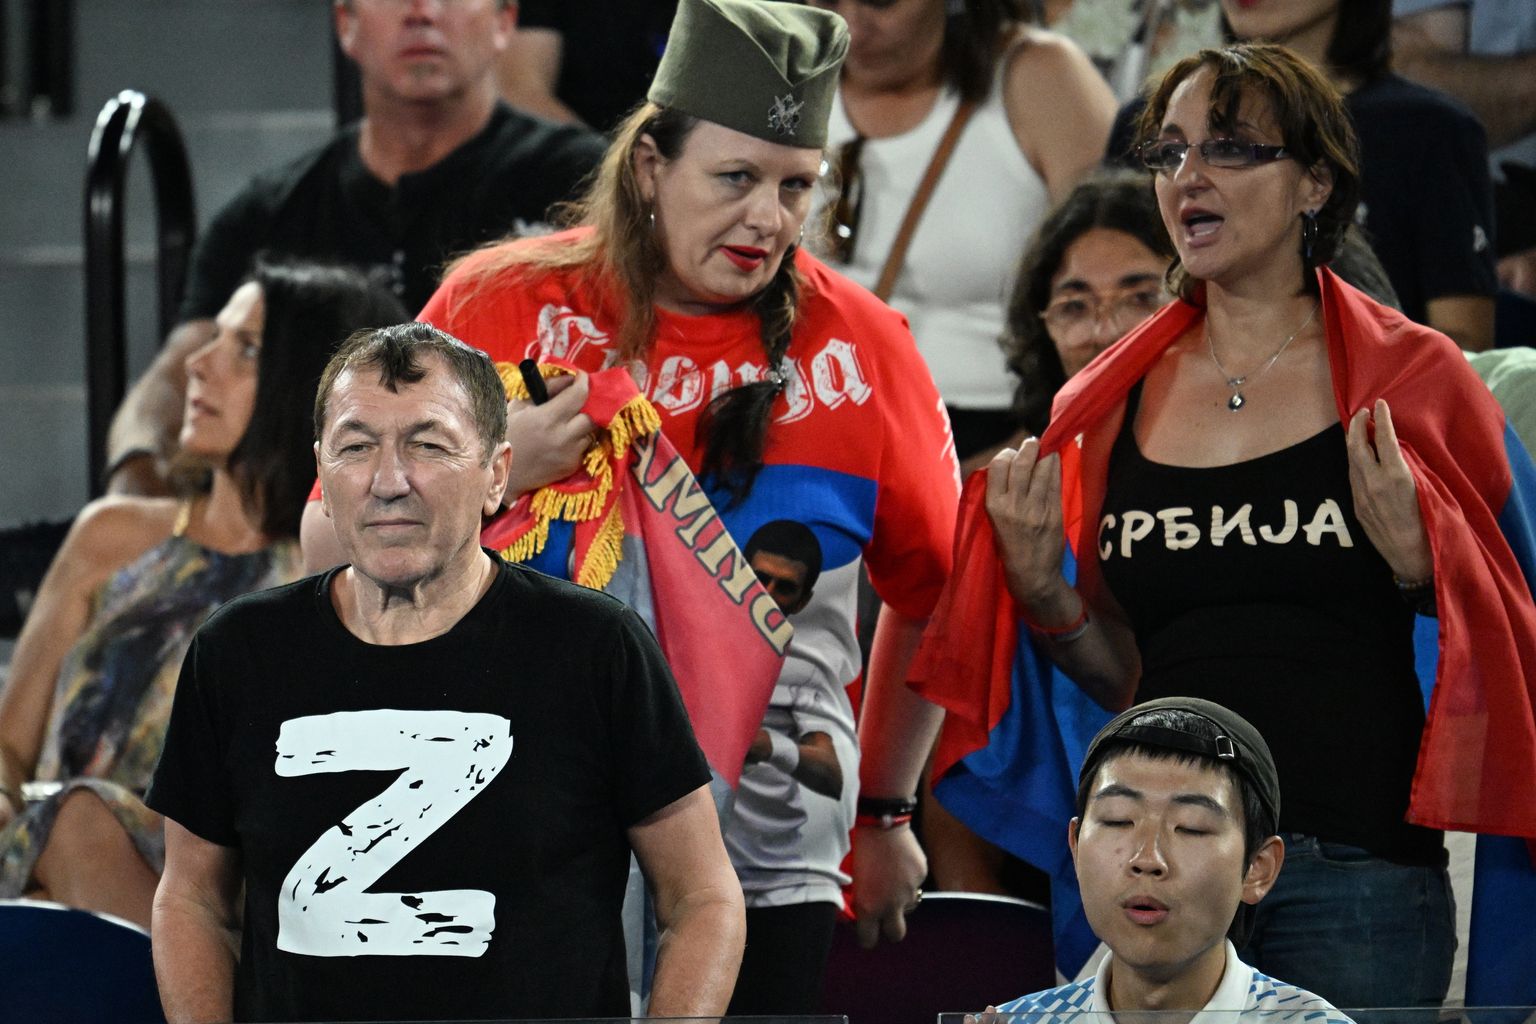 На теннисном матче между Новаком Джоковичем и Андреем Рублевым к группе болельщиков пришлось вызывать полицию.